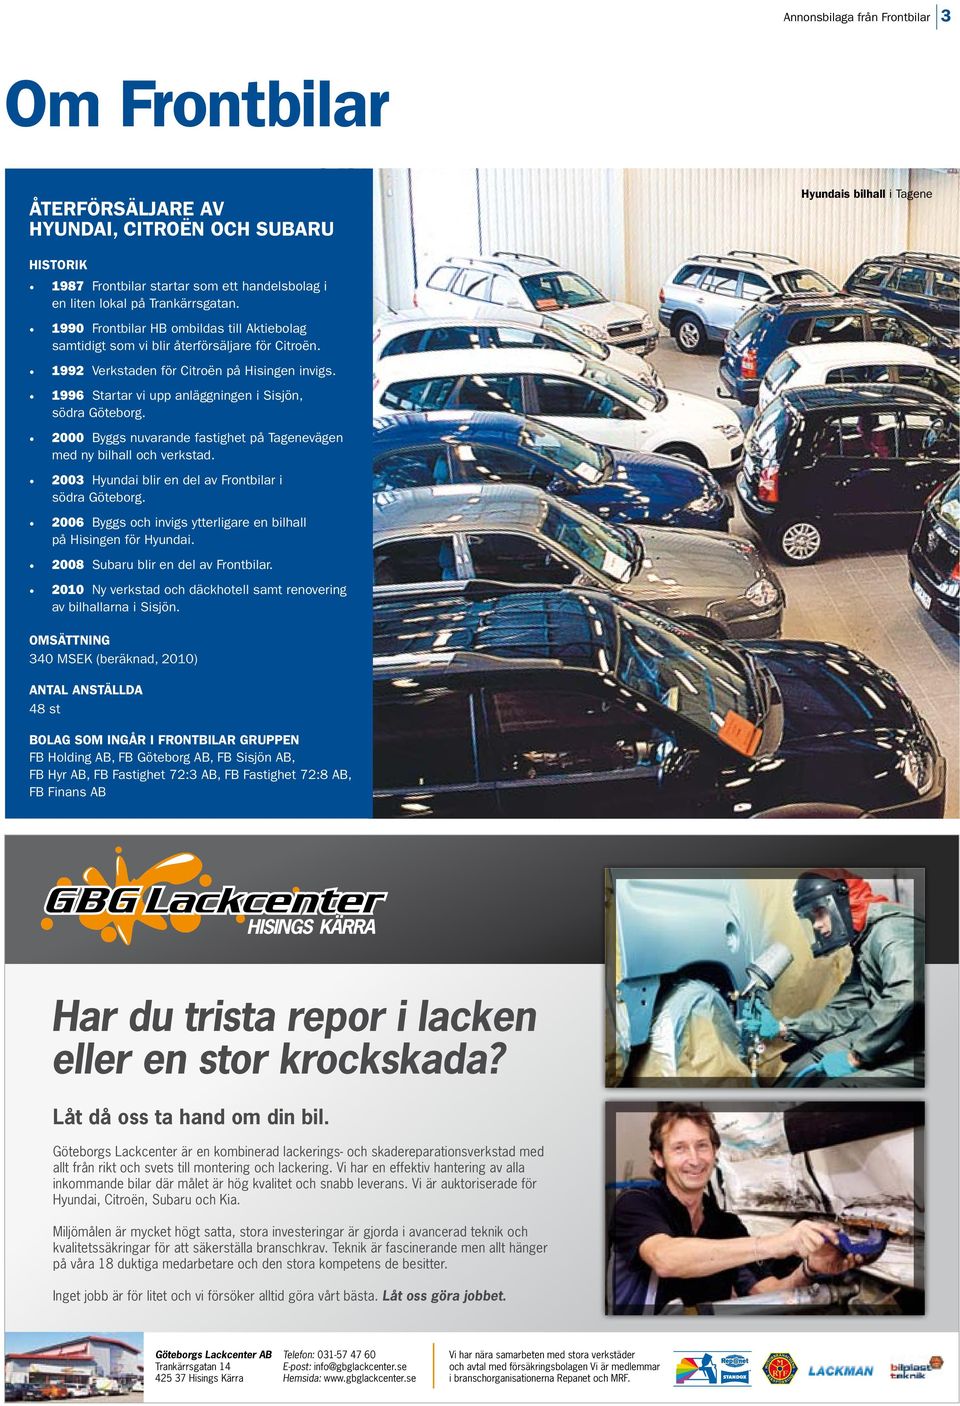 1996 Startar vi upp anläggningen i Sisjön, södra Göteborg. 2000 Byggs nuvarande fastighet på Tagenevägen med ny bilhall och verkstad. 2003 Hyundai blir en del av Frontbilar i södra Göteborg.